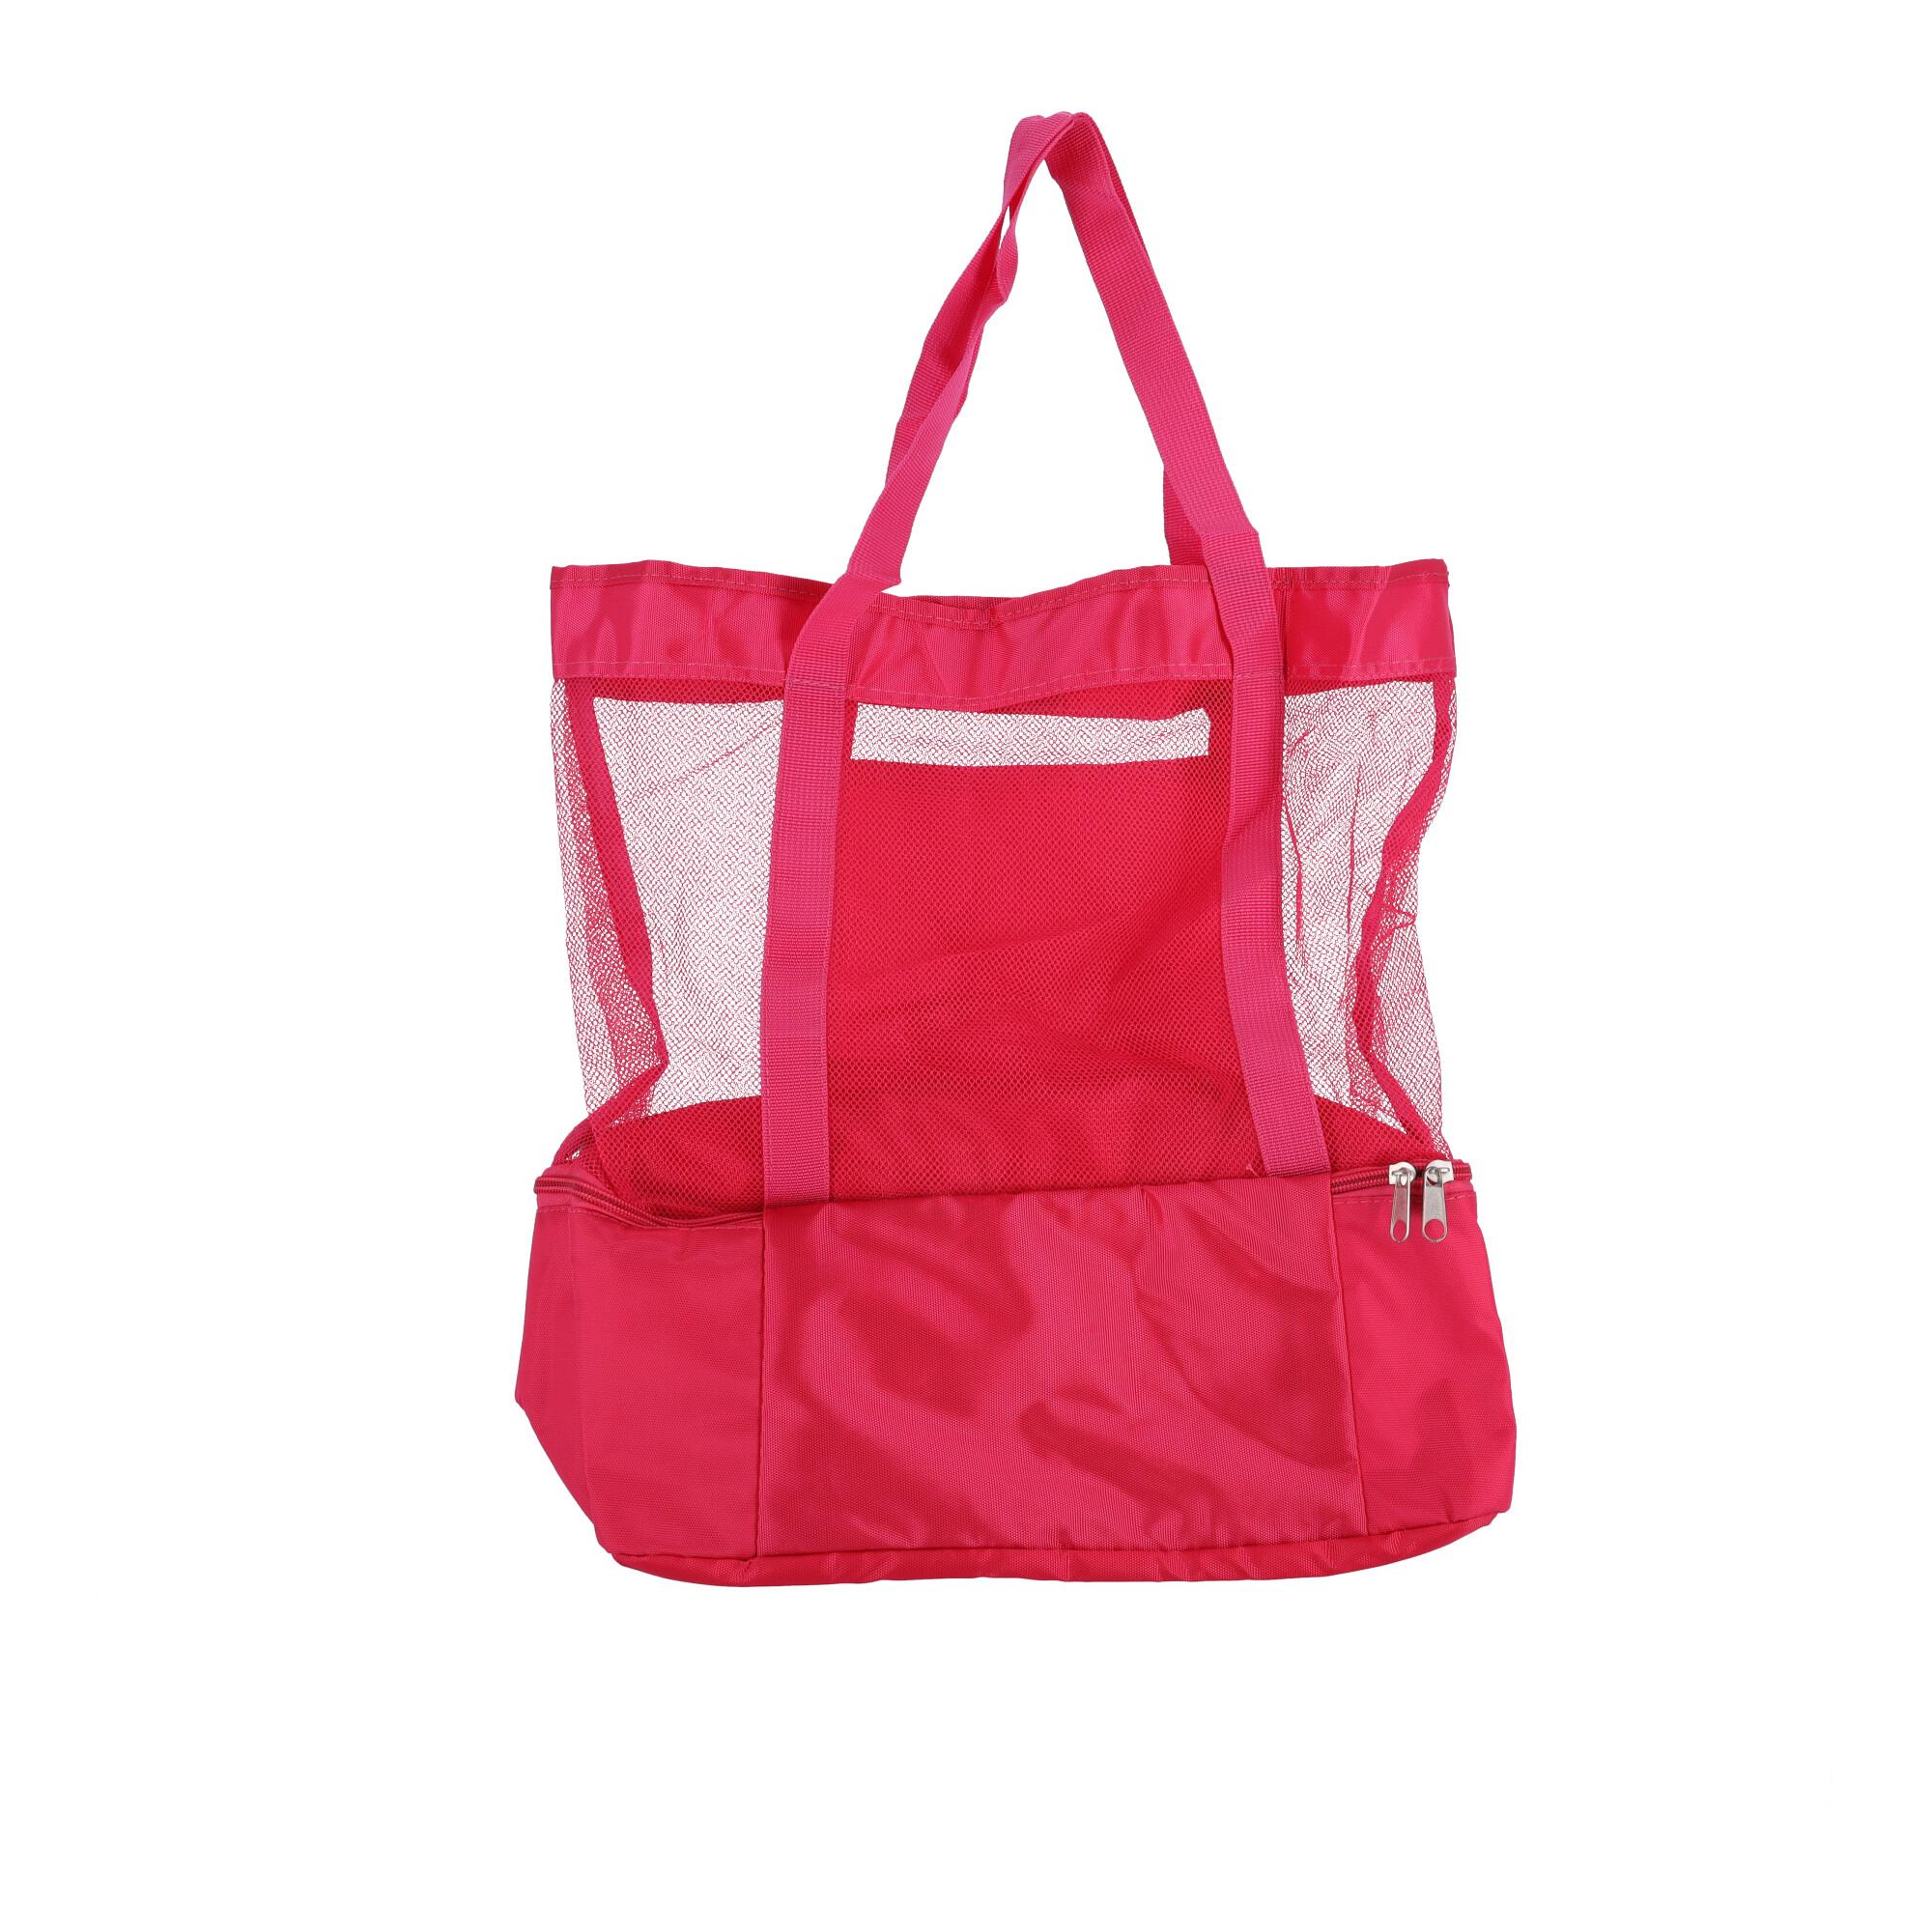 Picnic bag - pink